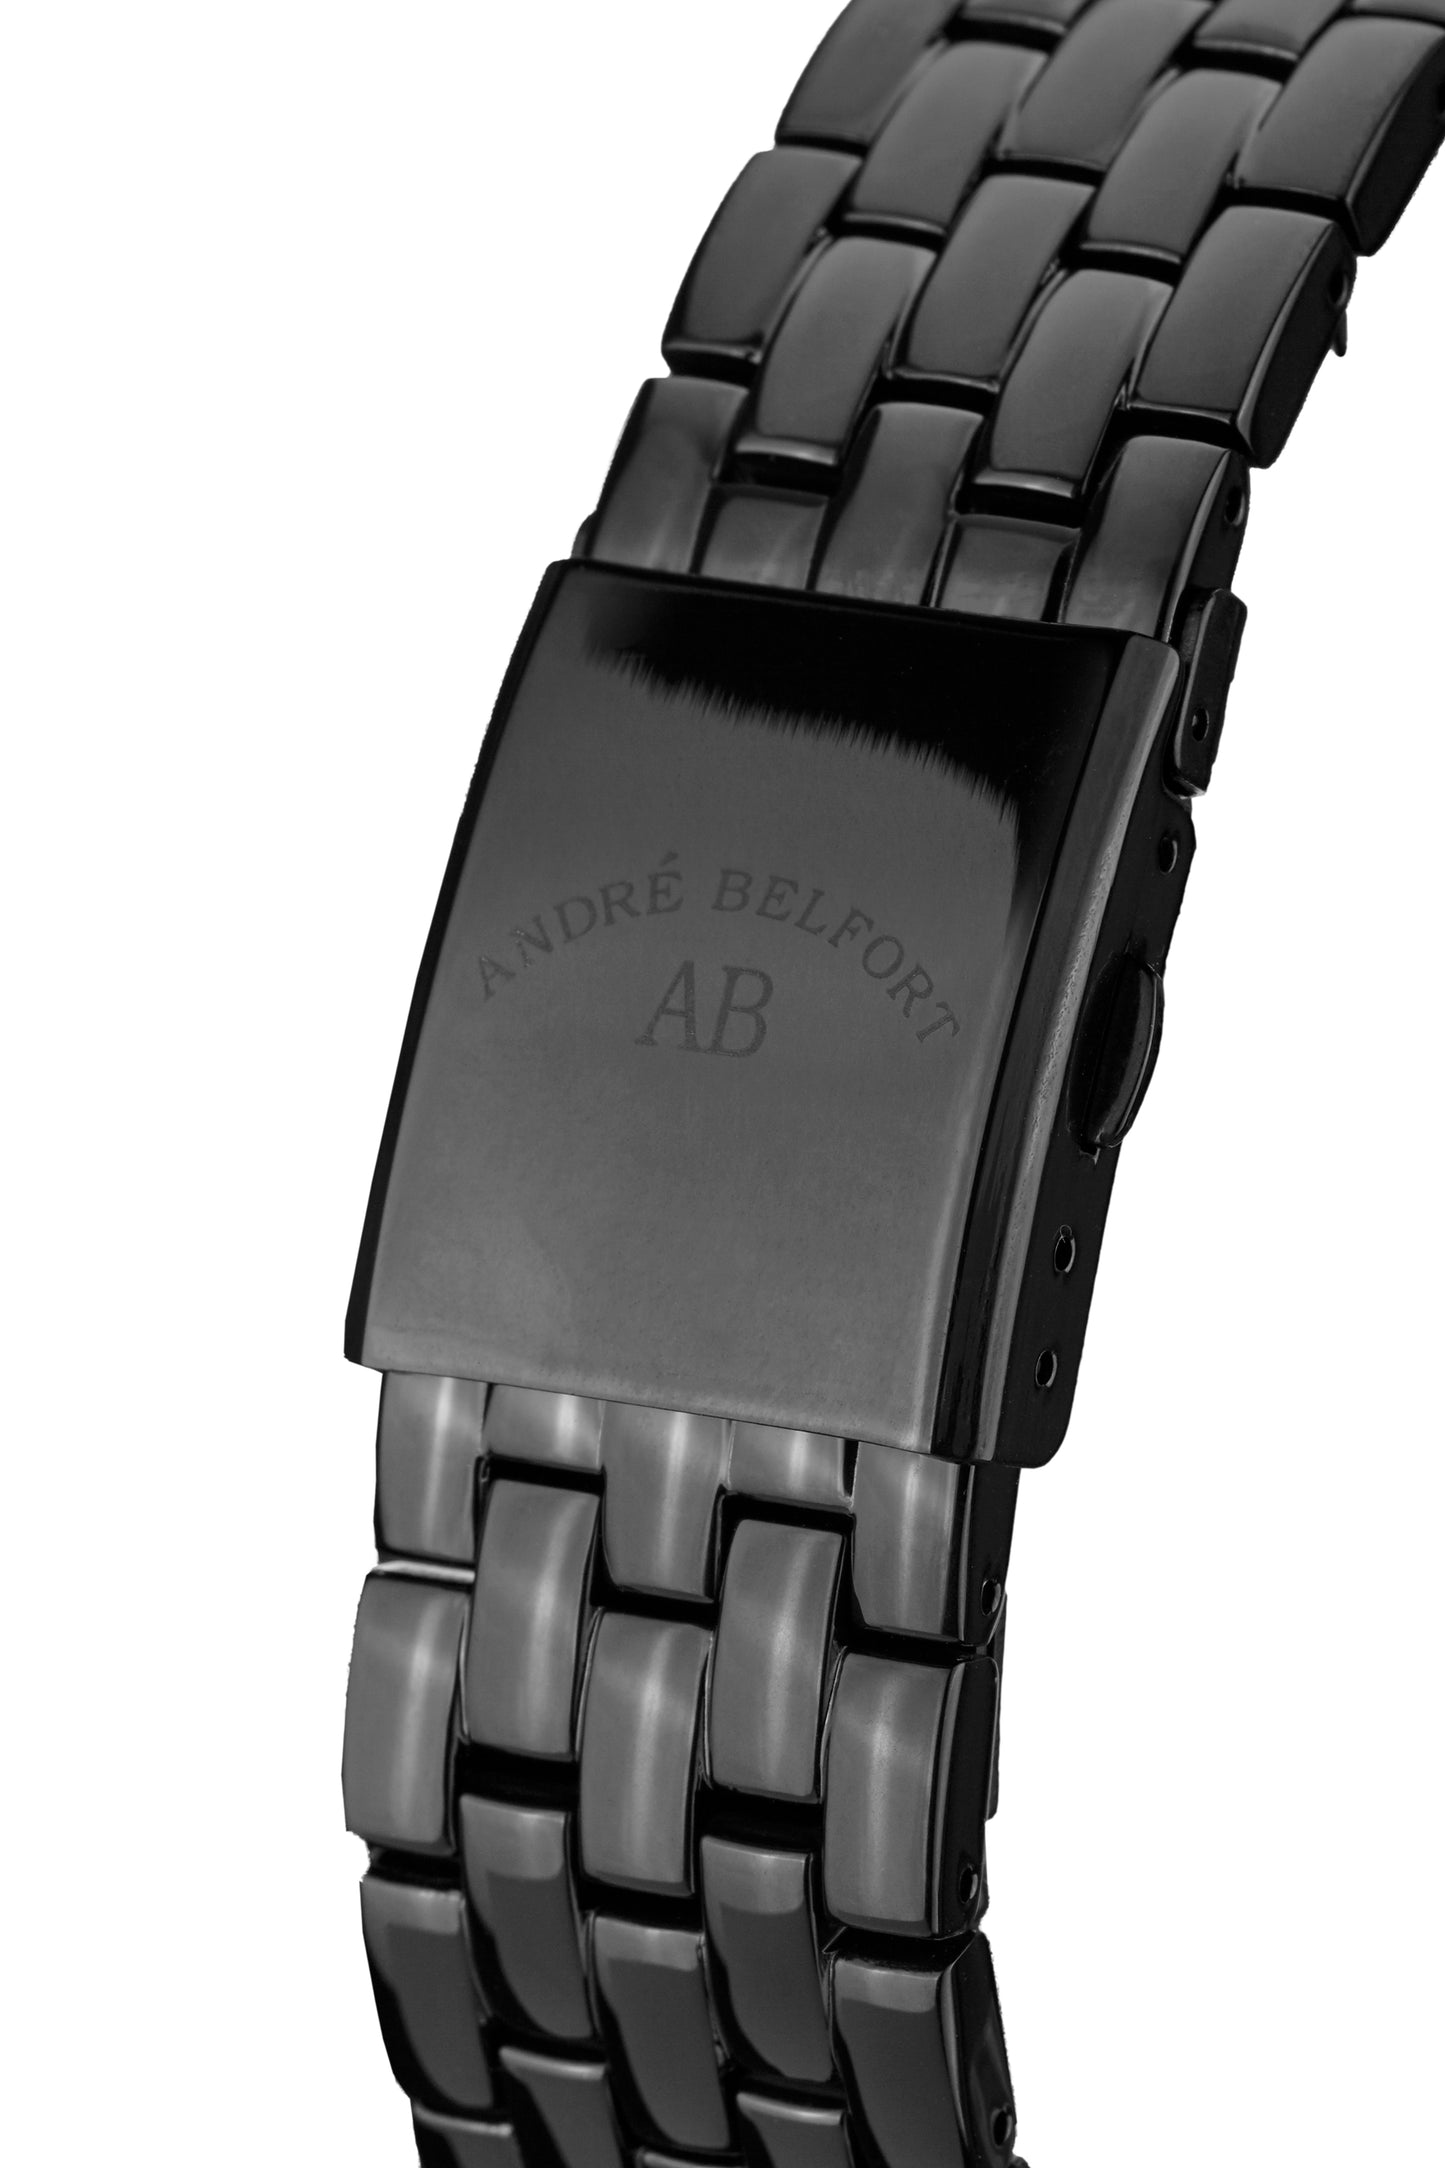 Automatic watches — Étoile Polaire — André Belfort — IP black